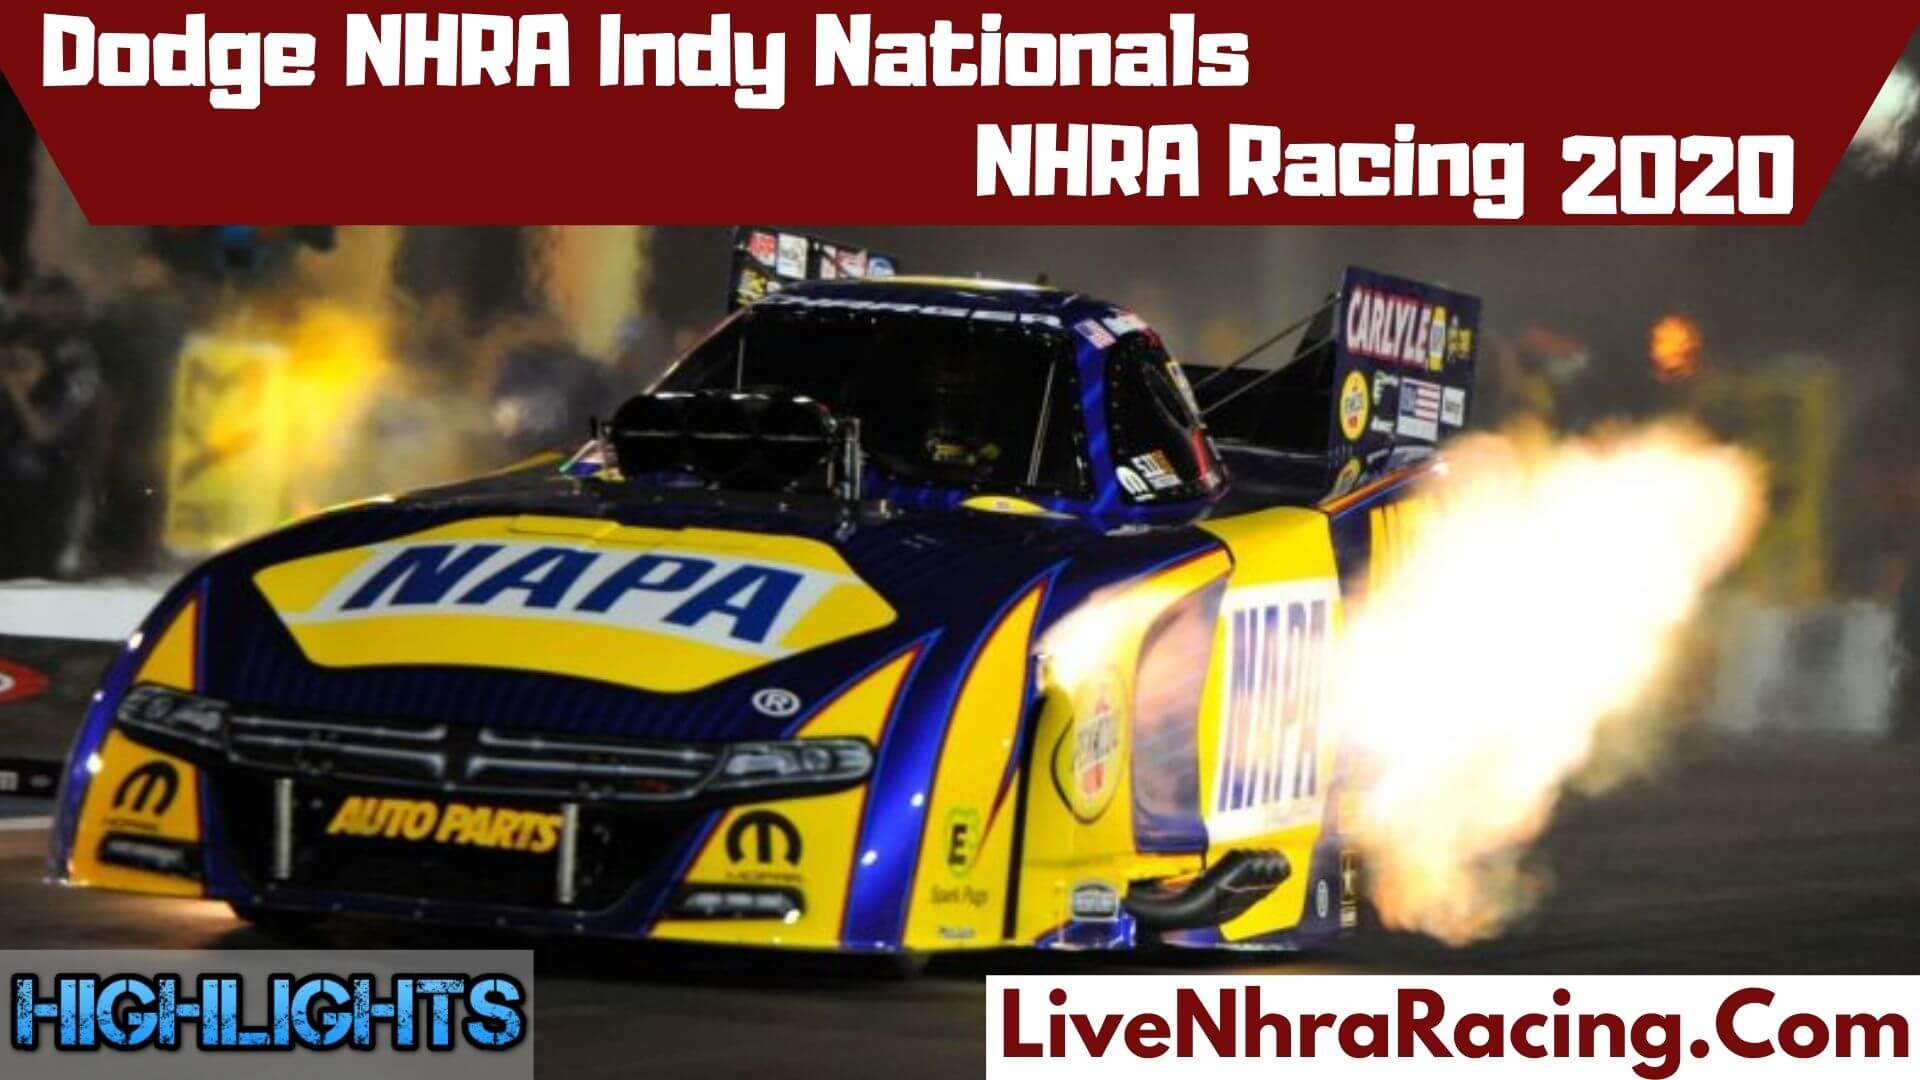 Dodge NHRA Indy Nationals Highlights 2020